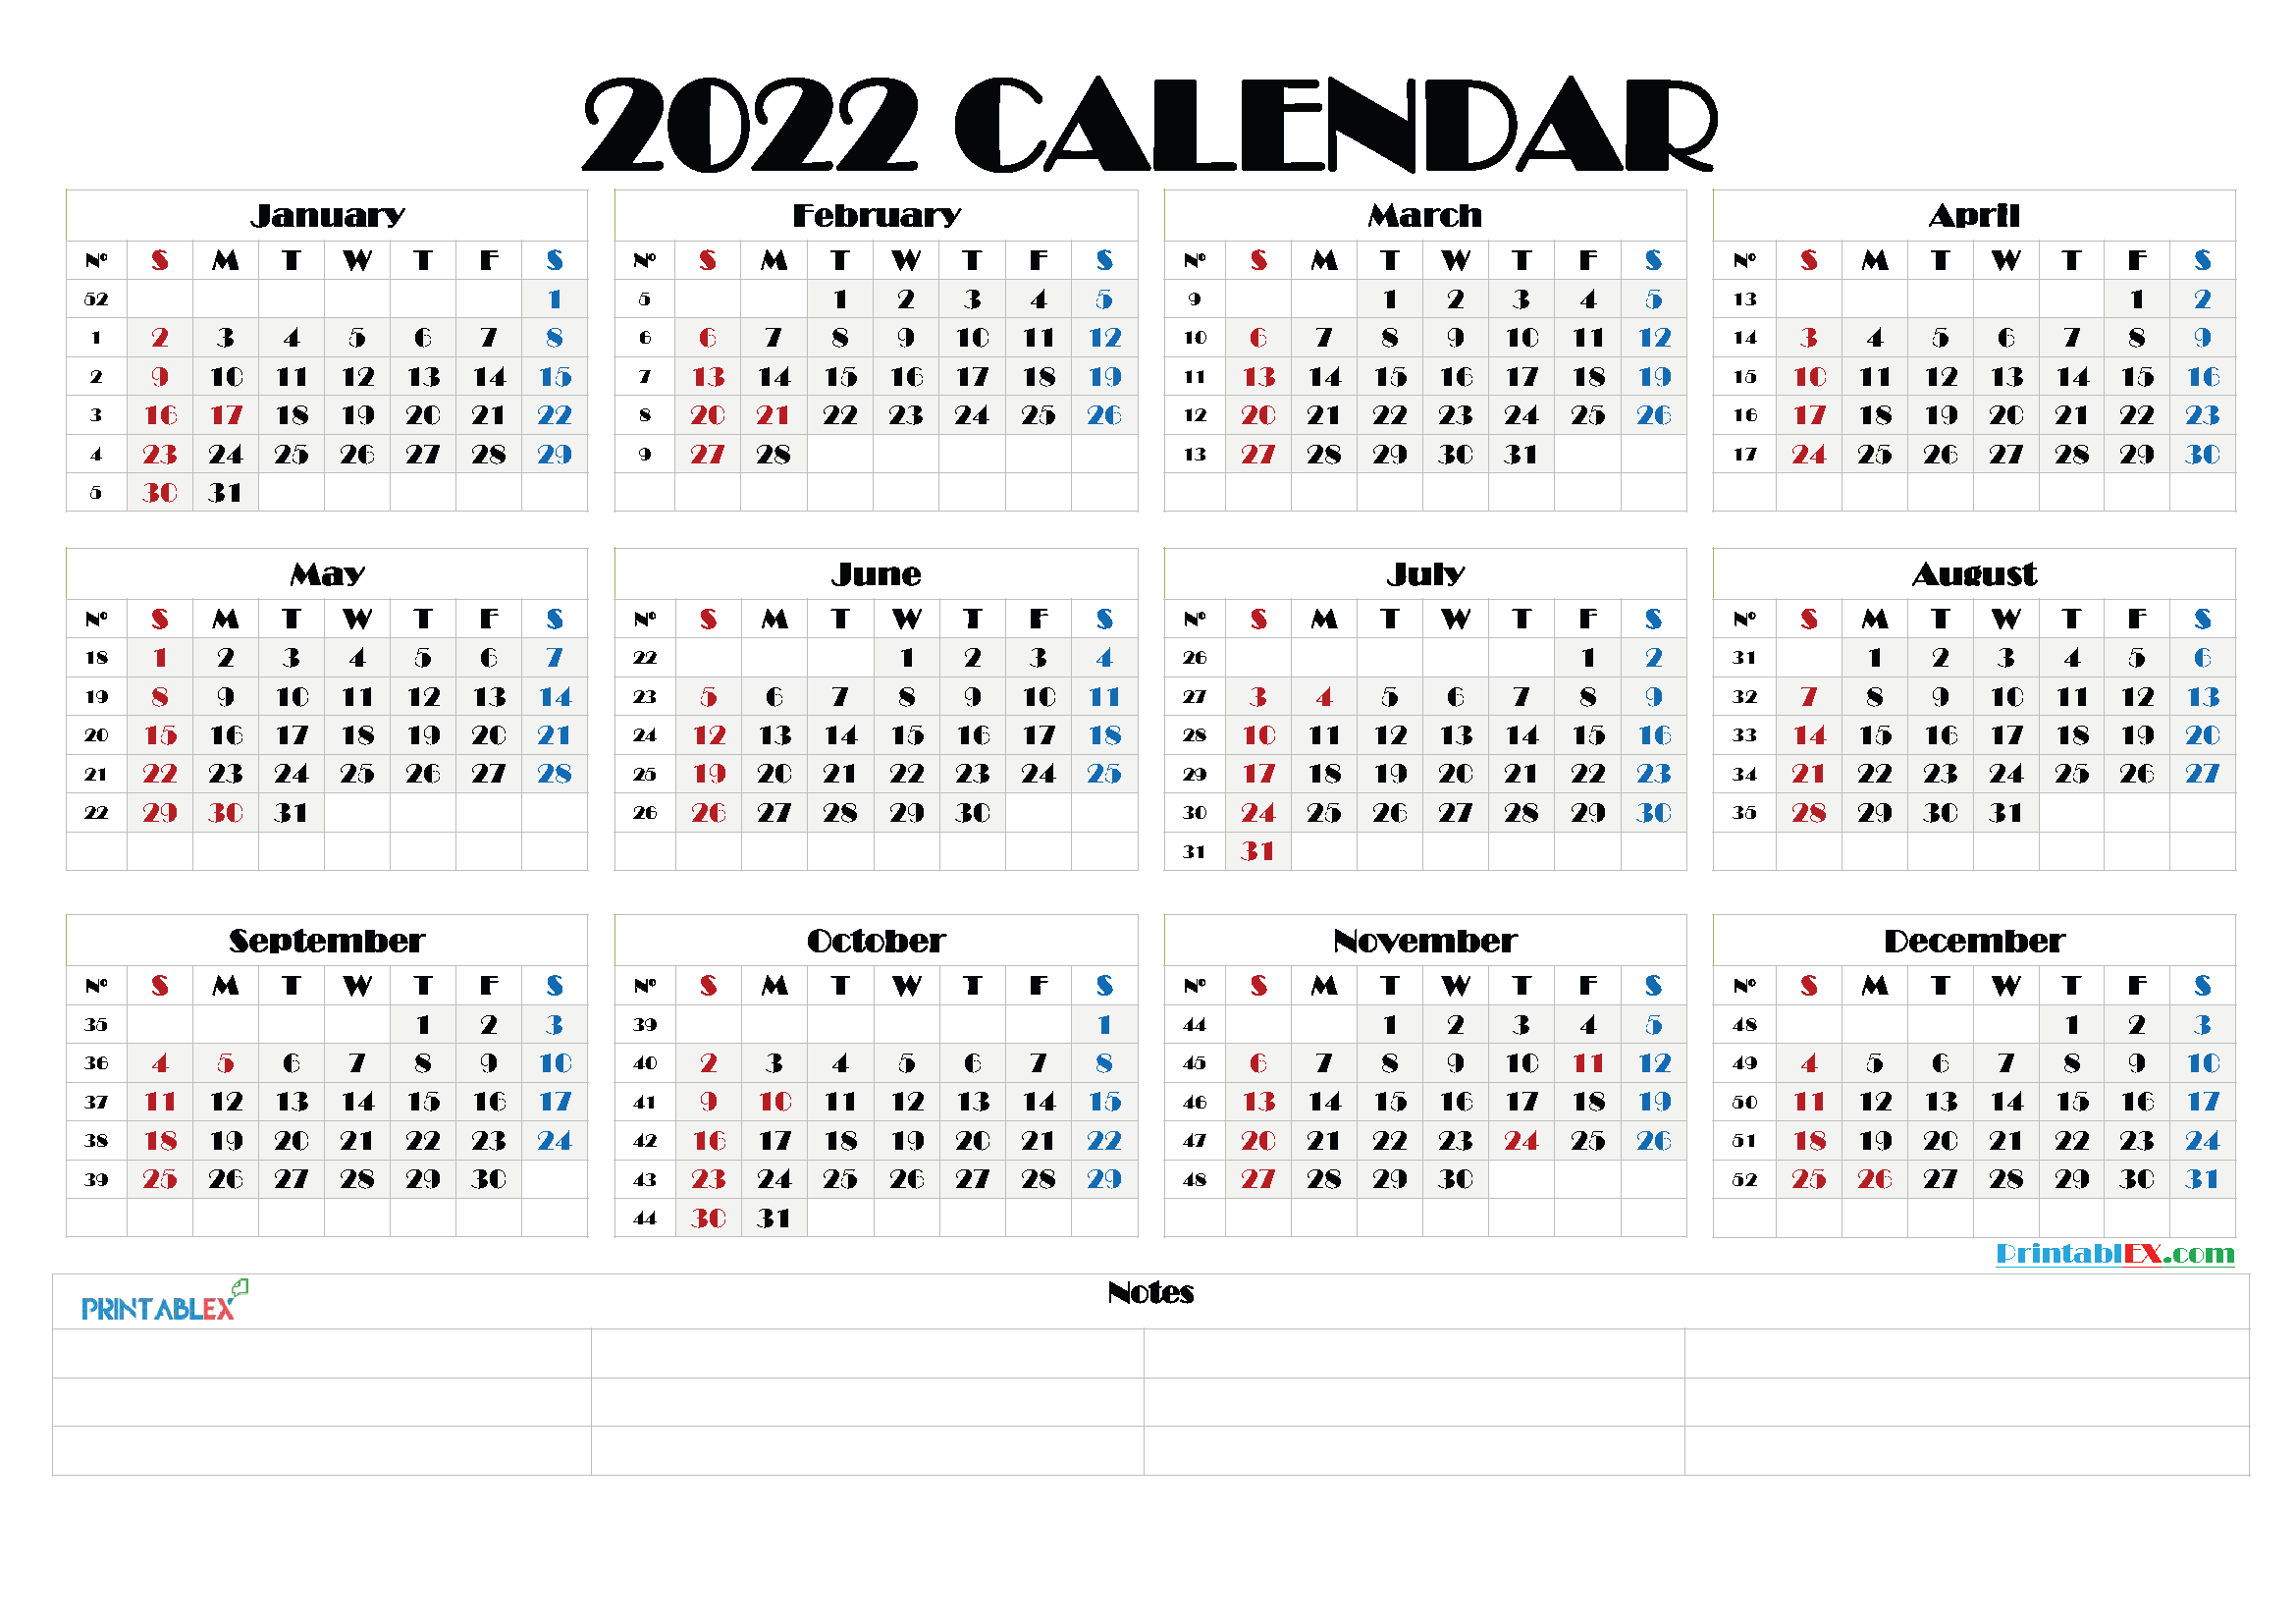 calendar by week number